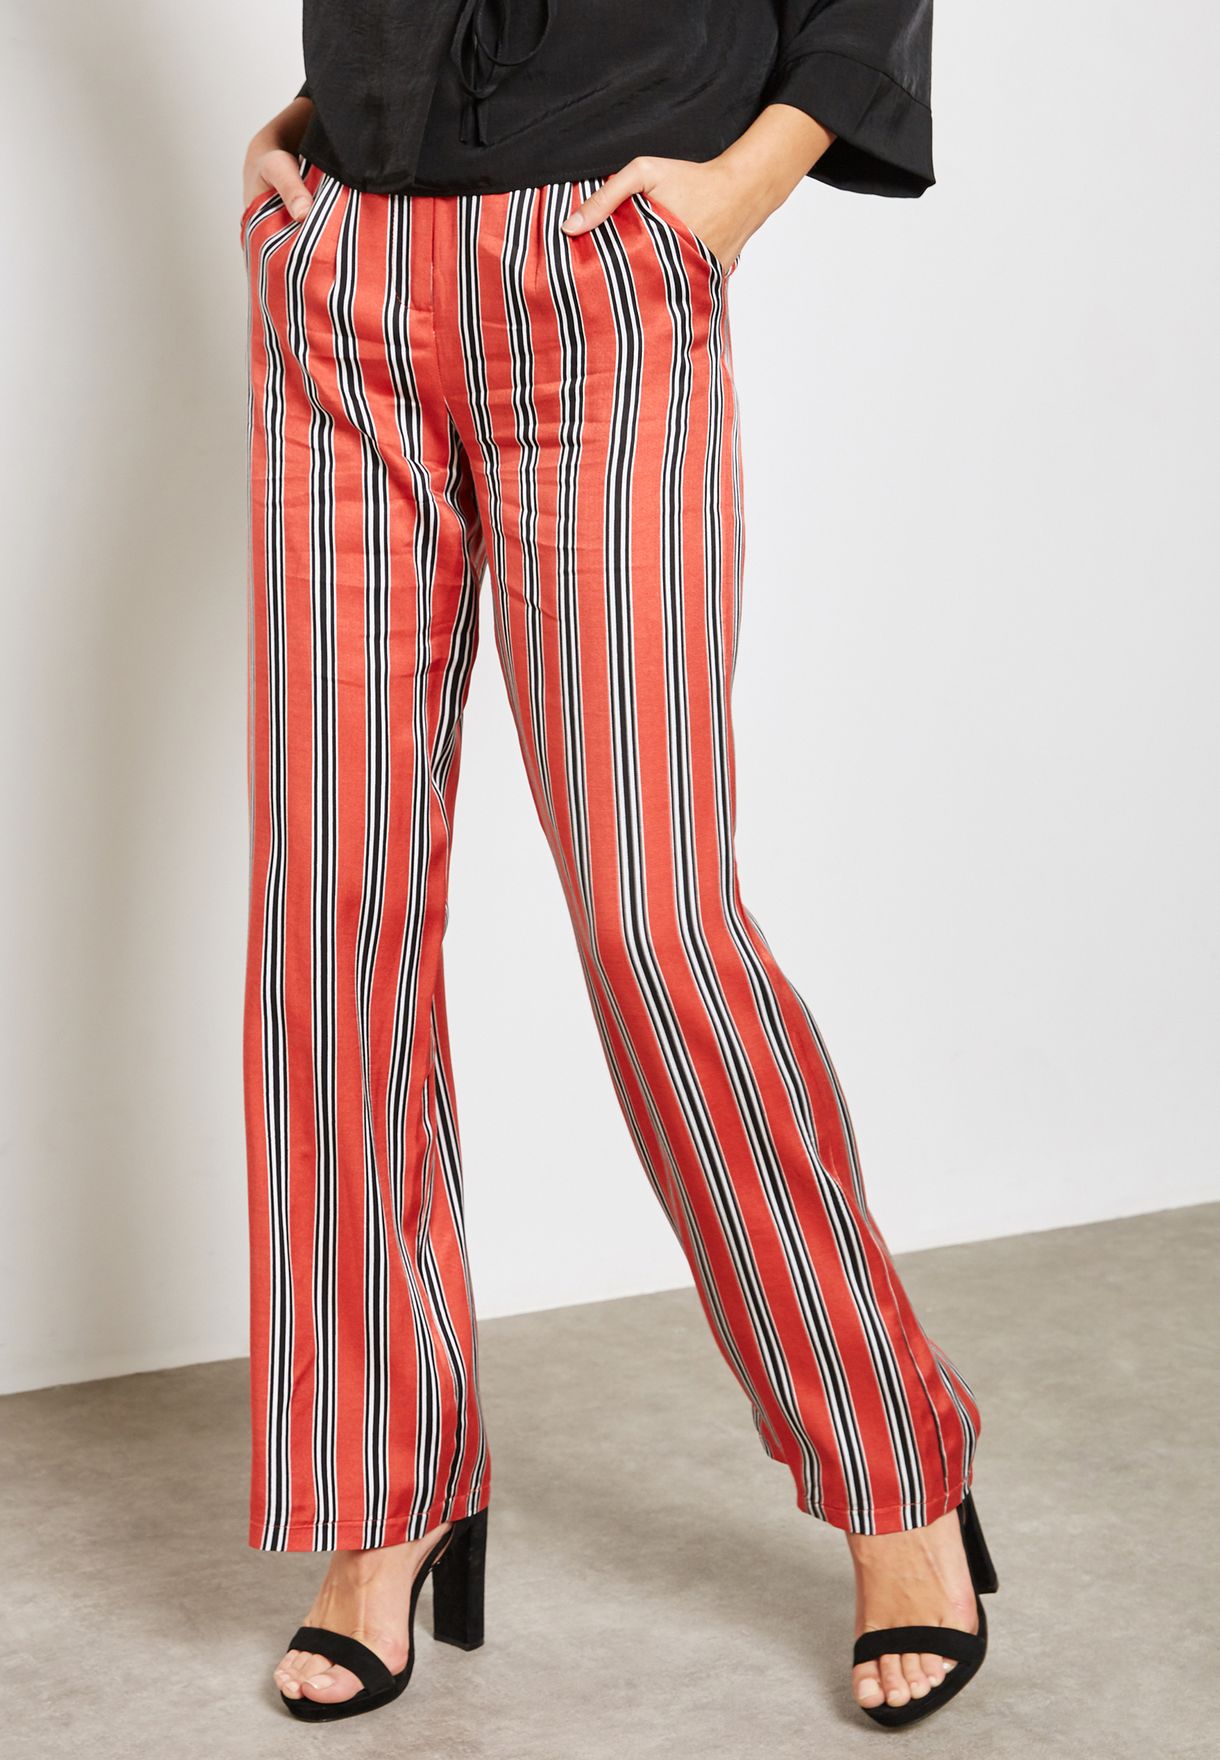 topshop striped pants